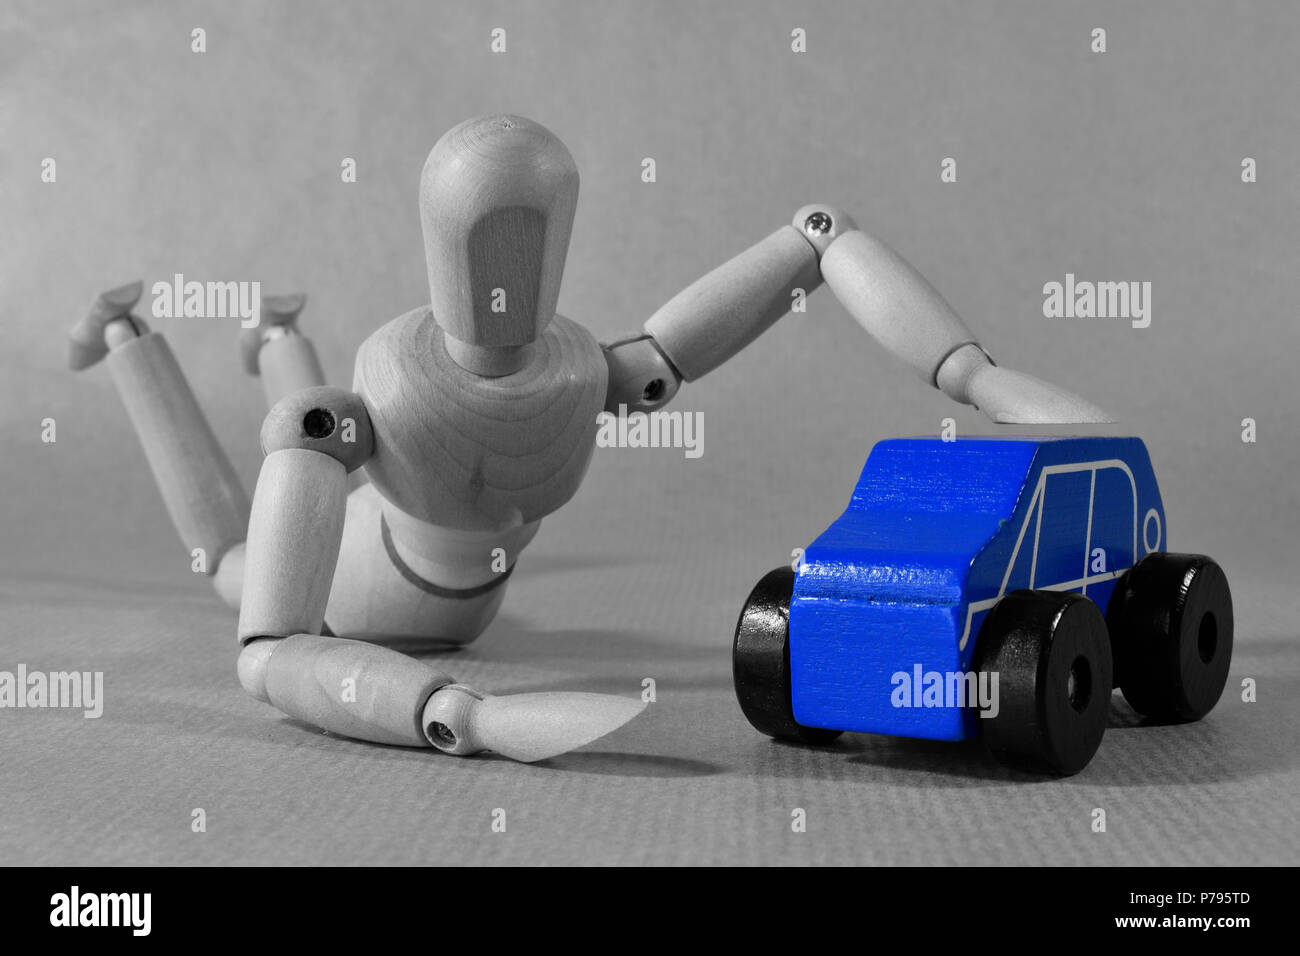 Denken Sie an ein neues Auto. Werbung Fotografie mit Guy umarmen ein Spielzeugauto. Blau. Stockfoto